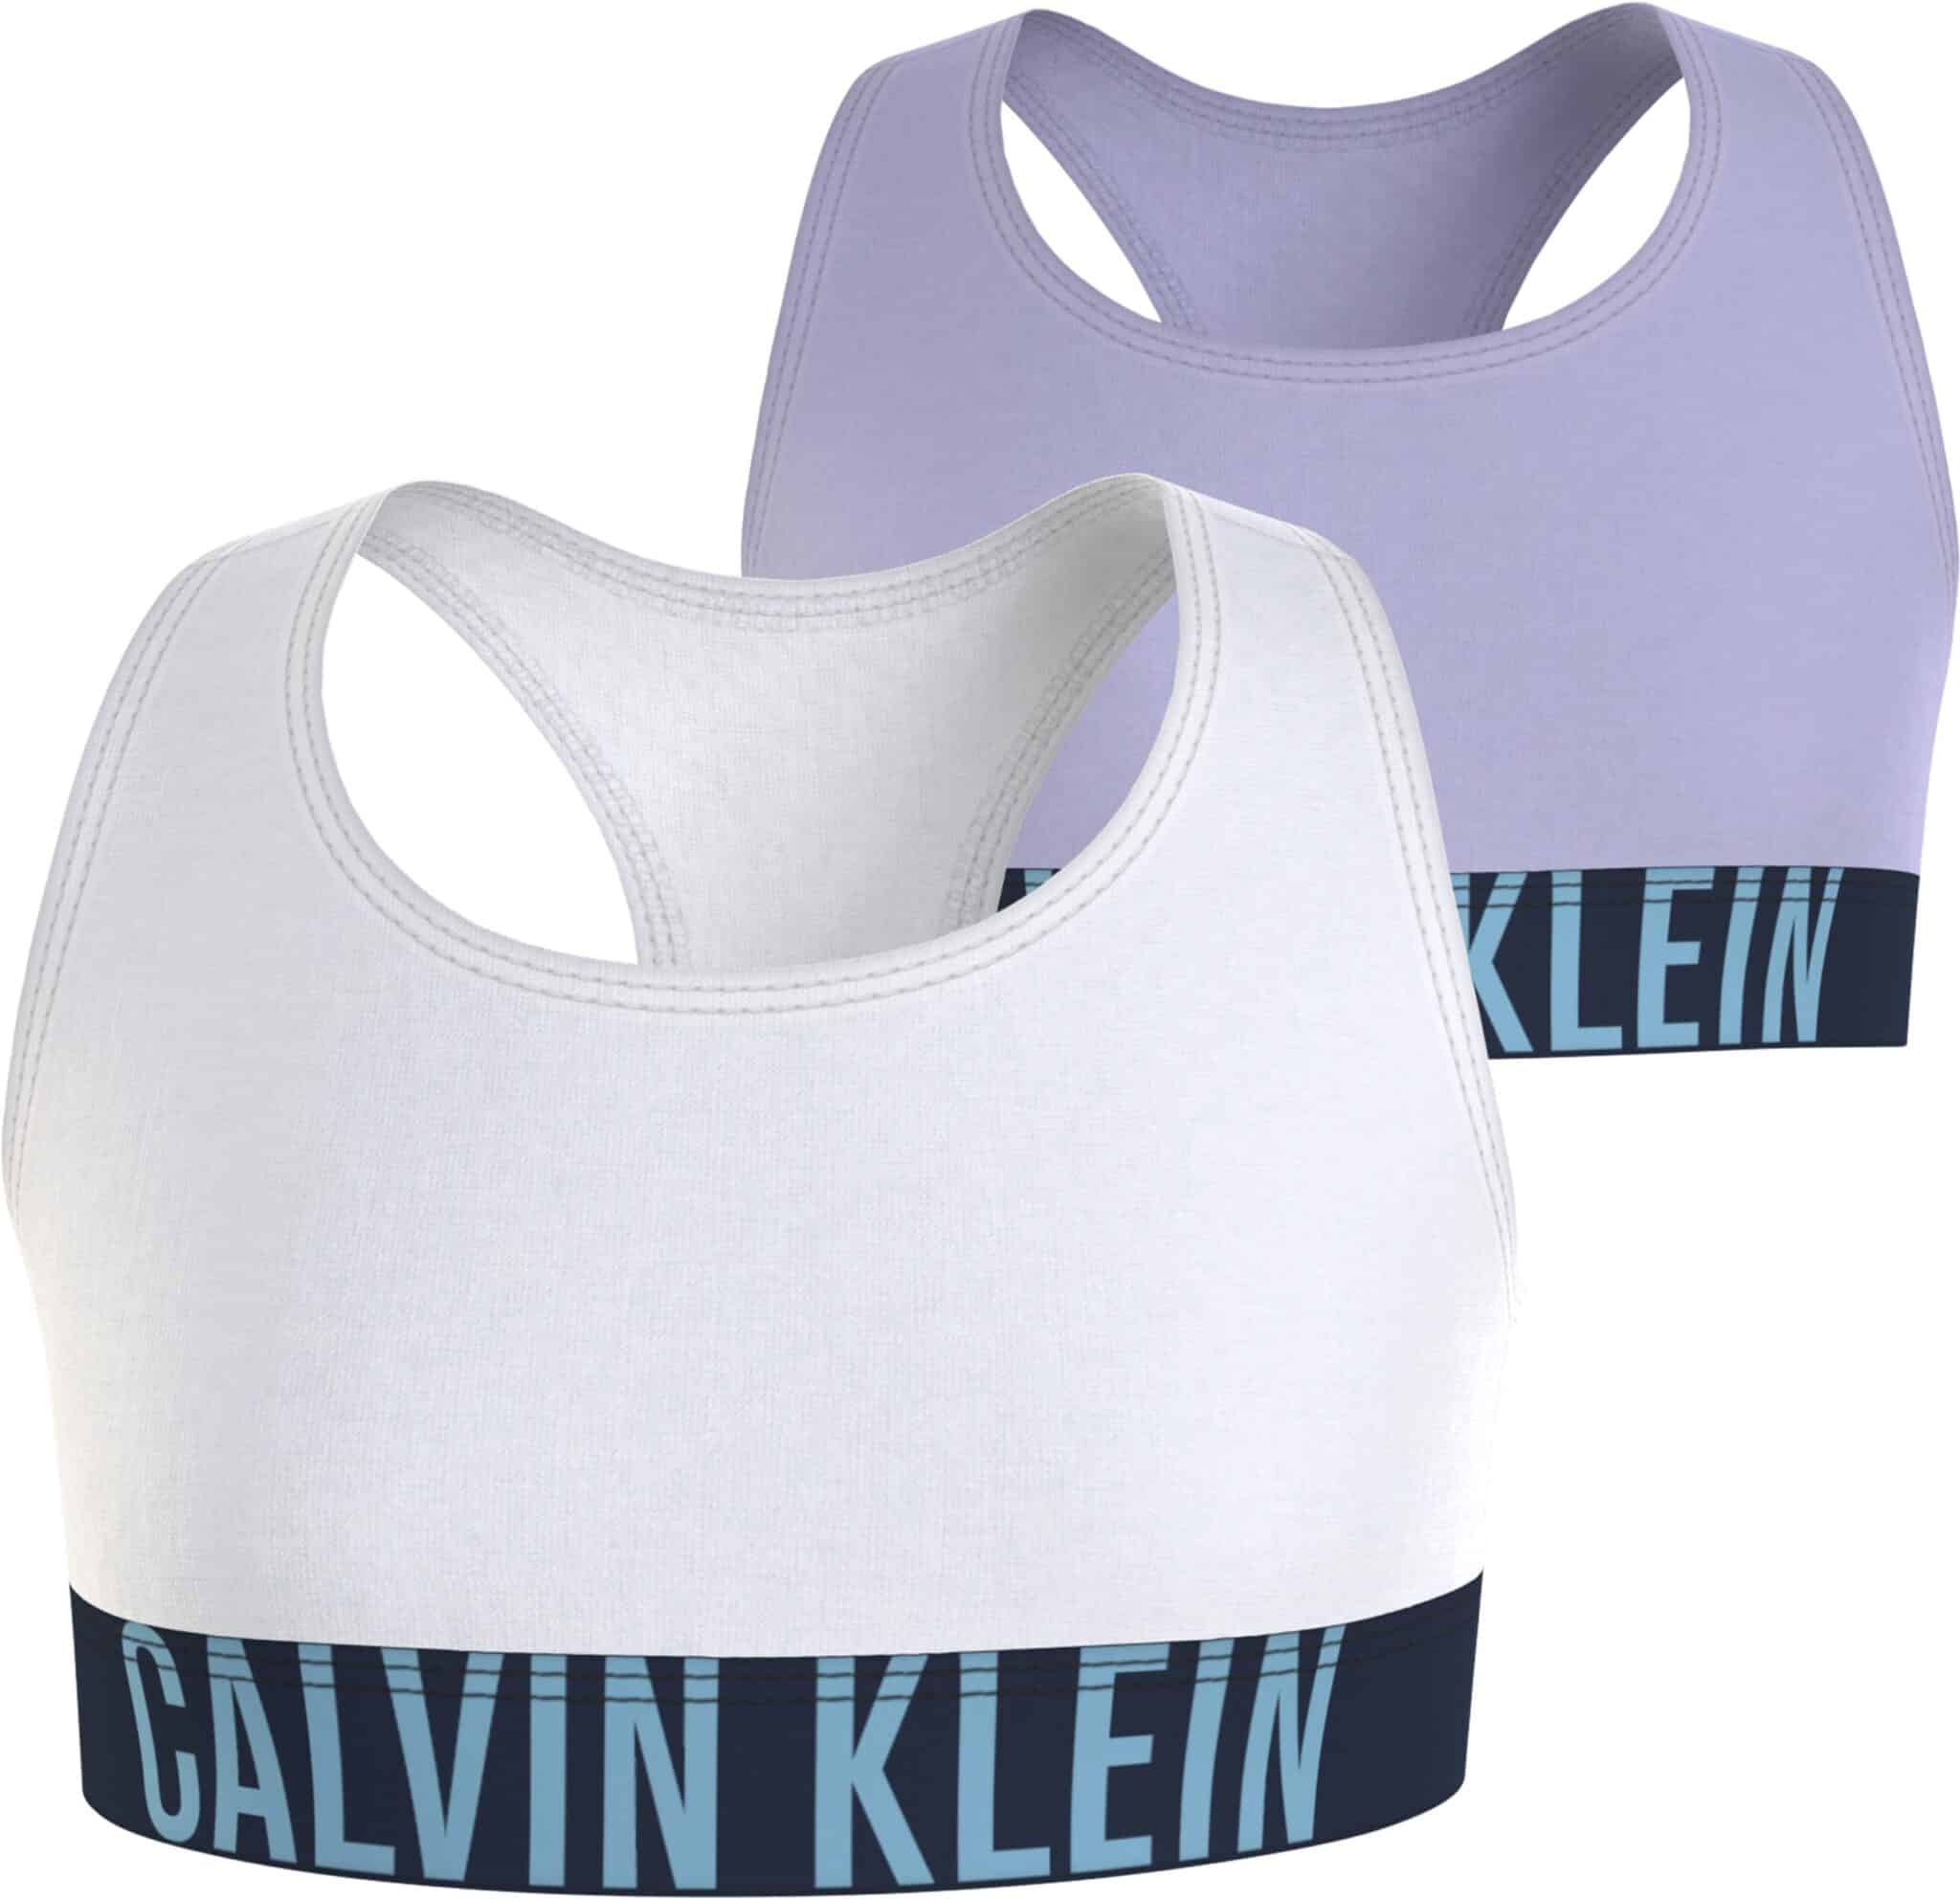 Calvin Klein Girls 2 Pack Bralette Intense Power - Kids Life Clothing -  Children's designer clothing